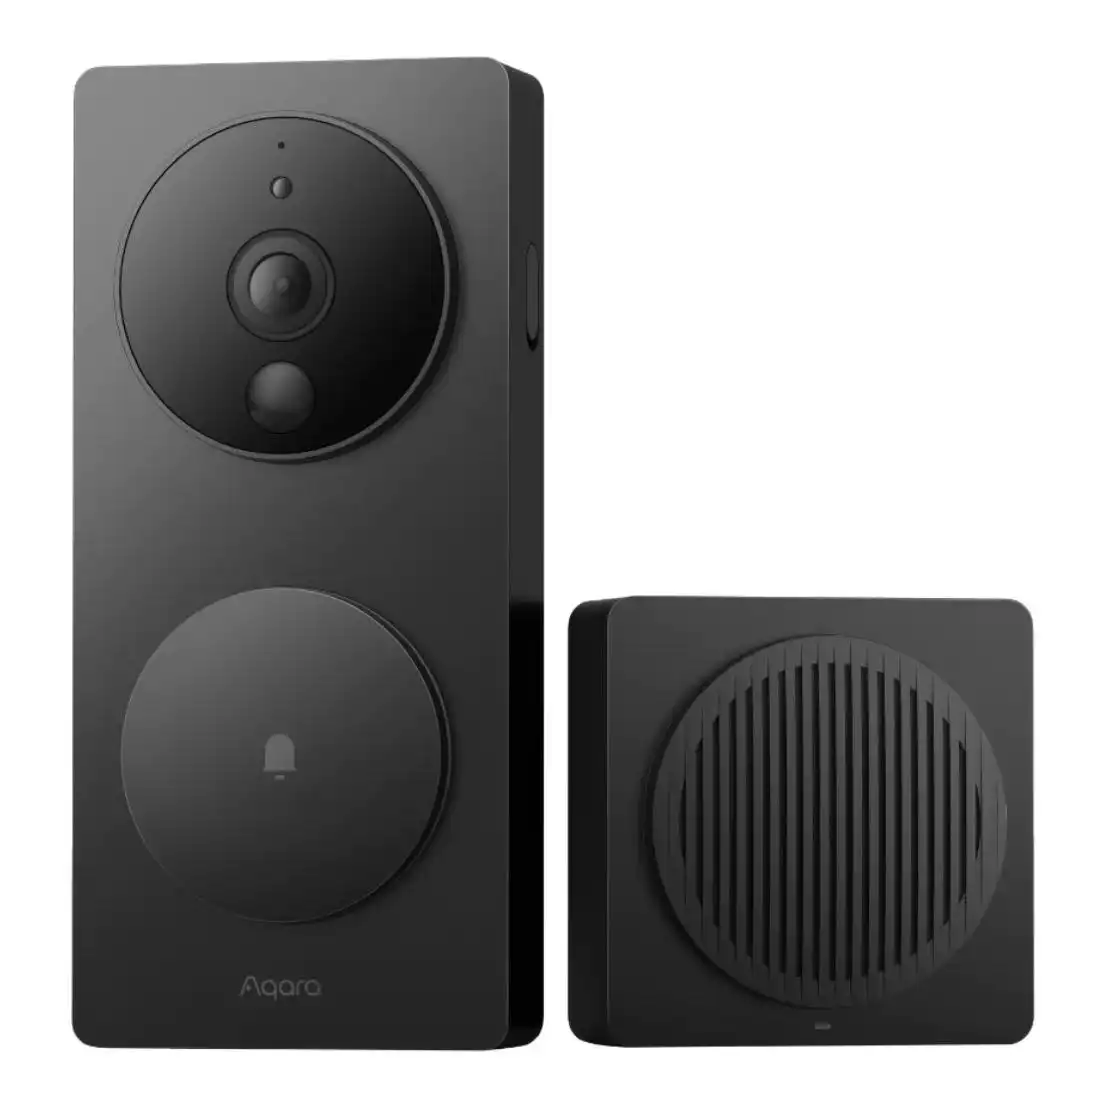 Aqara Smart Video Doorbell G4 SVD-C03 - Black